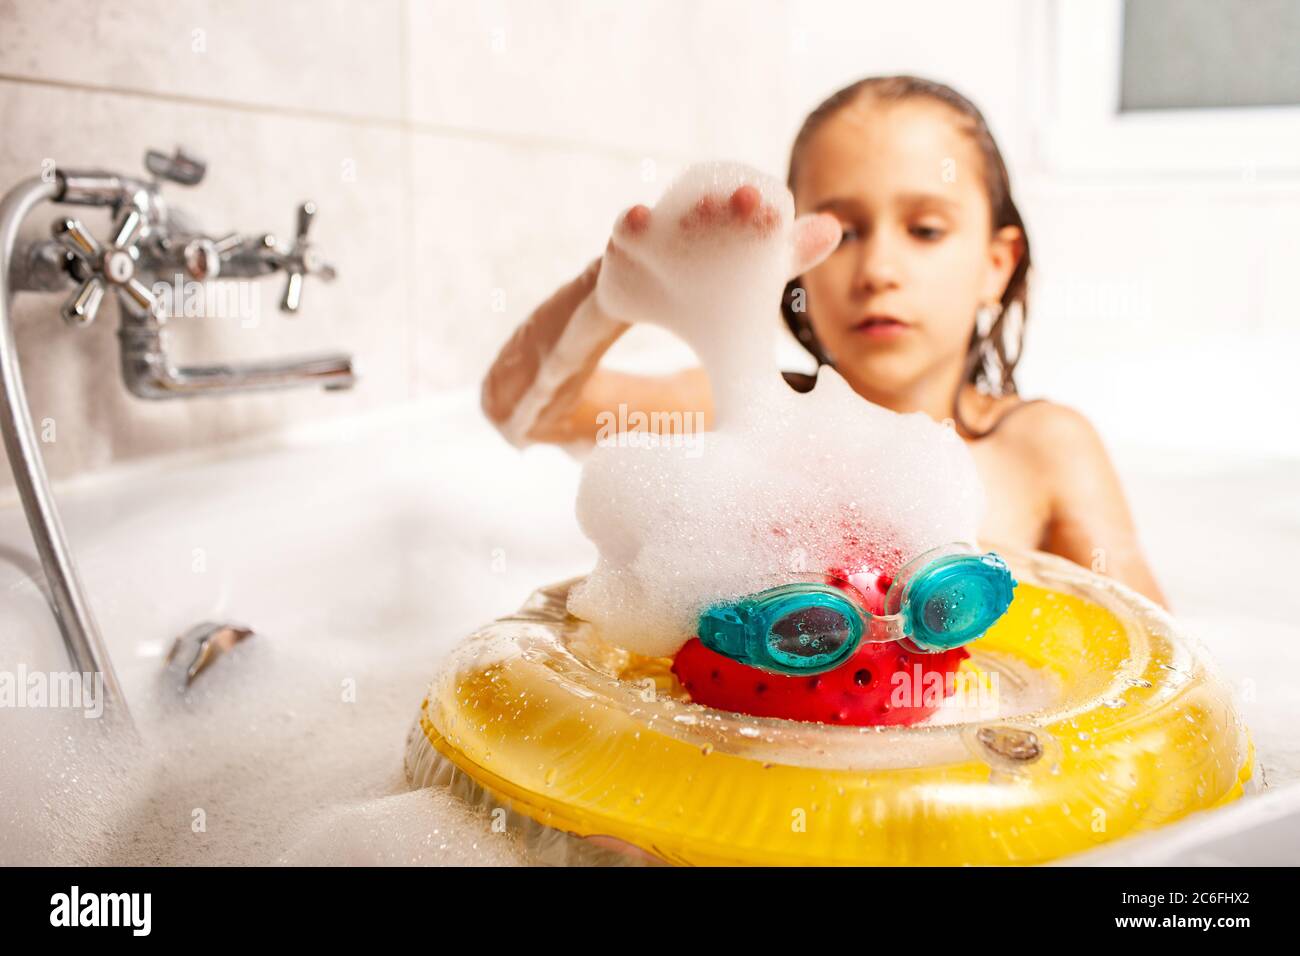 Видео купается ванна девочки. Девочка маленькая купается в ванной. Девочка с игрушками моется в ванной. Девочка моется в ванной с игрушками с игрушками. Девочка играется в ванной.